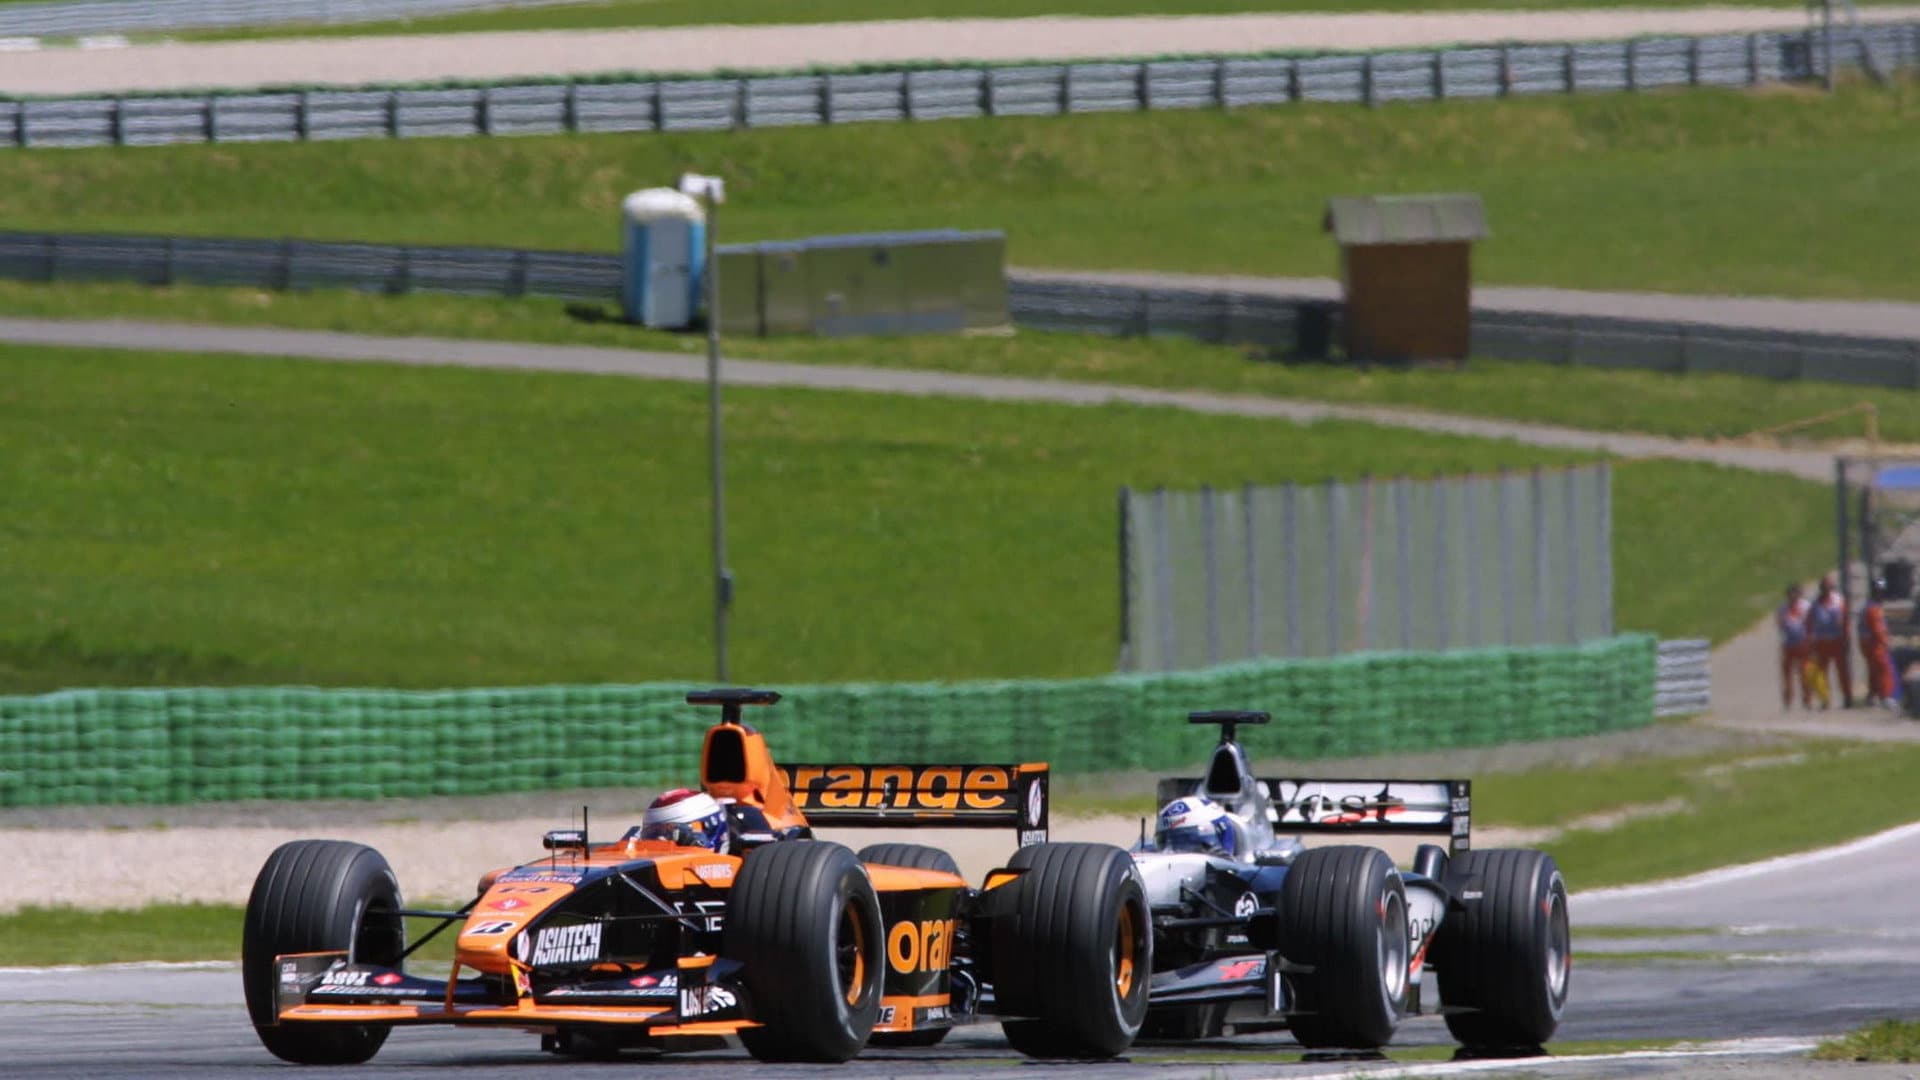 Formule 1 keert in 2014 terug naar Oostenrijk